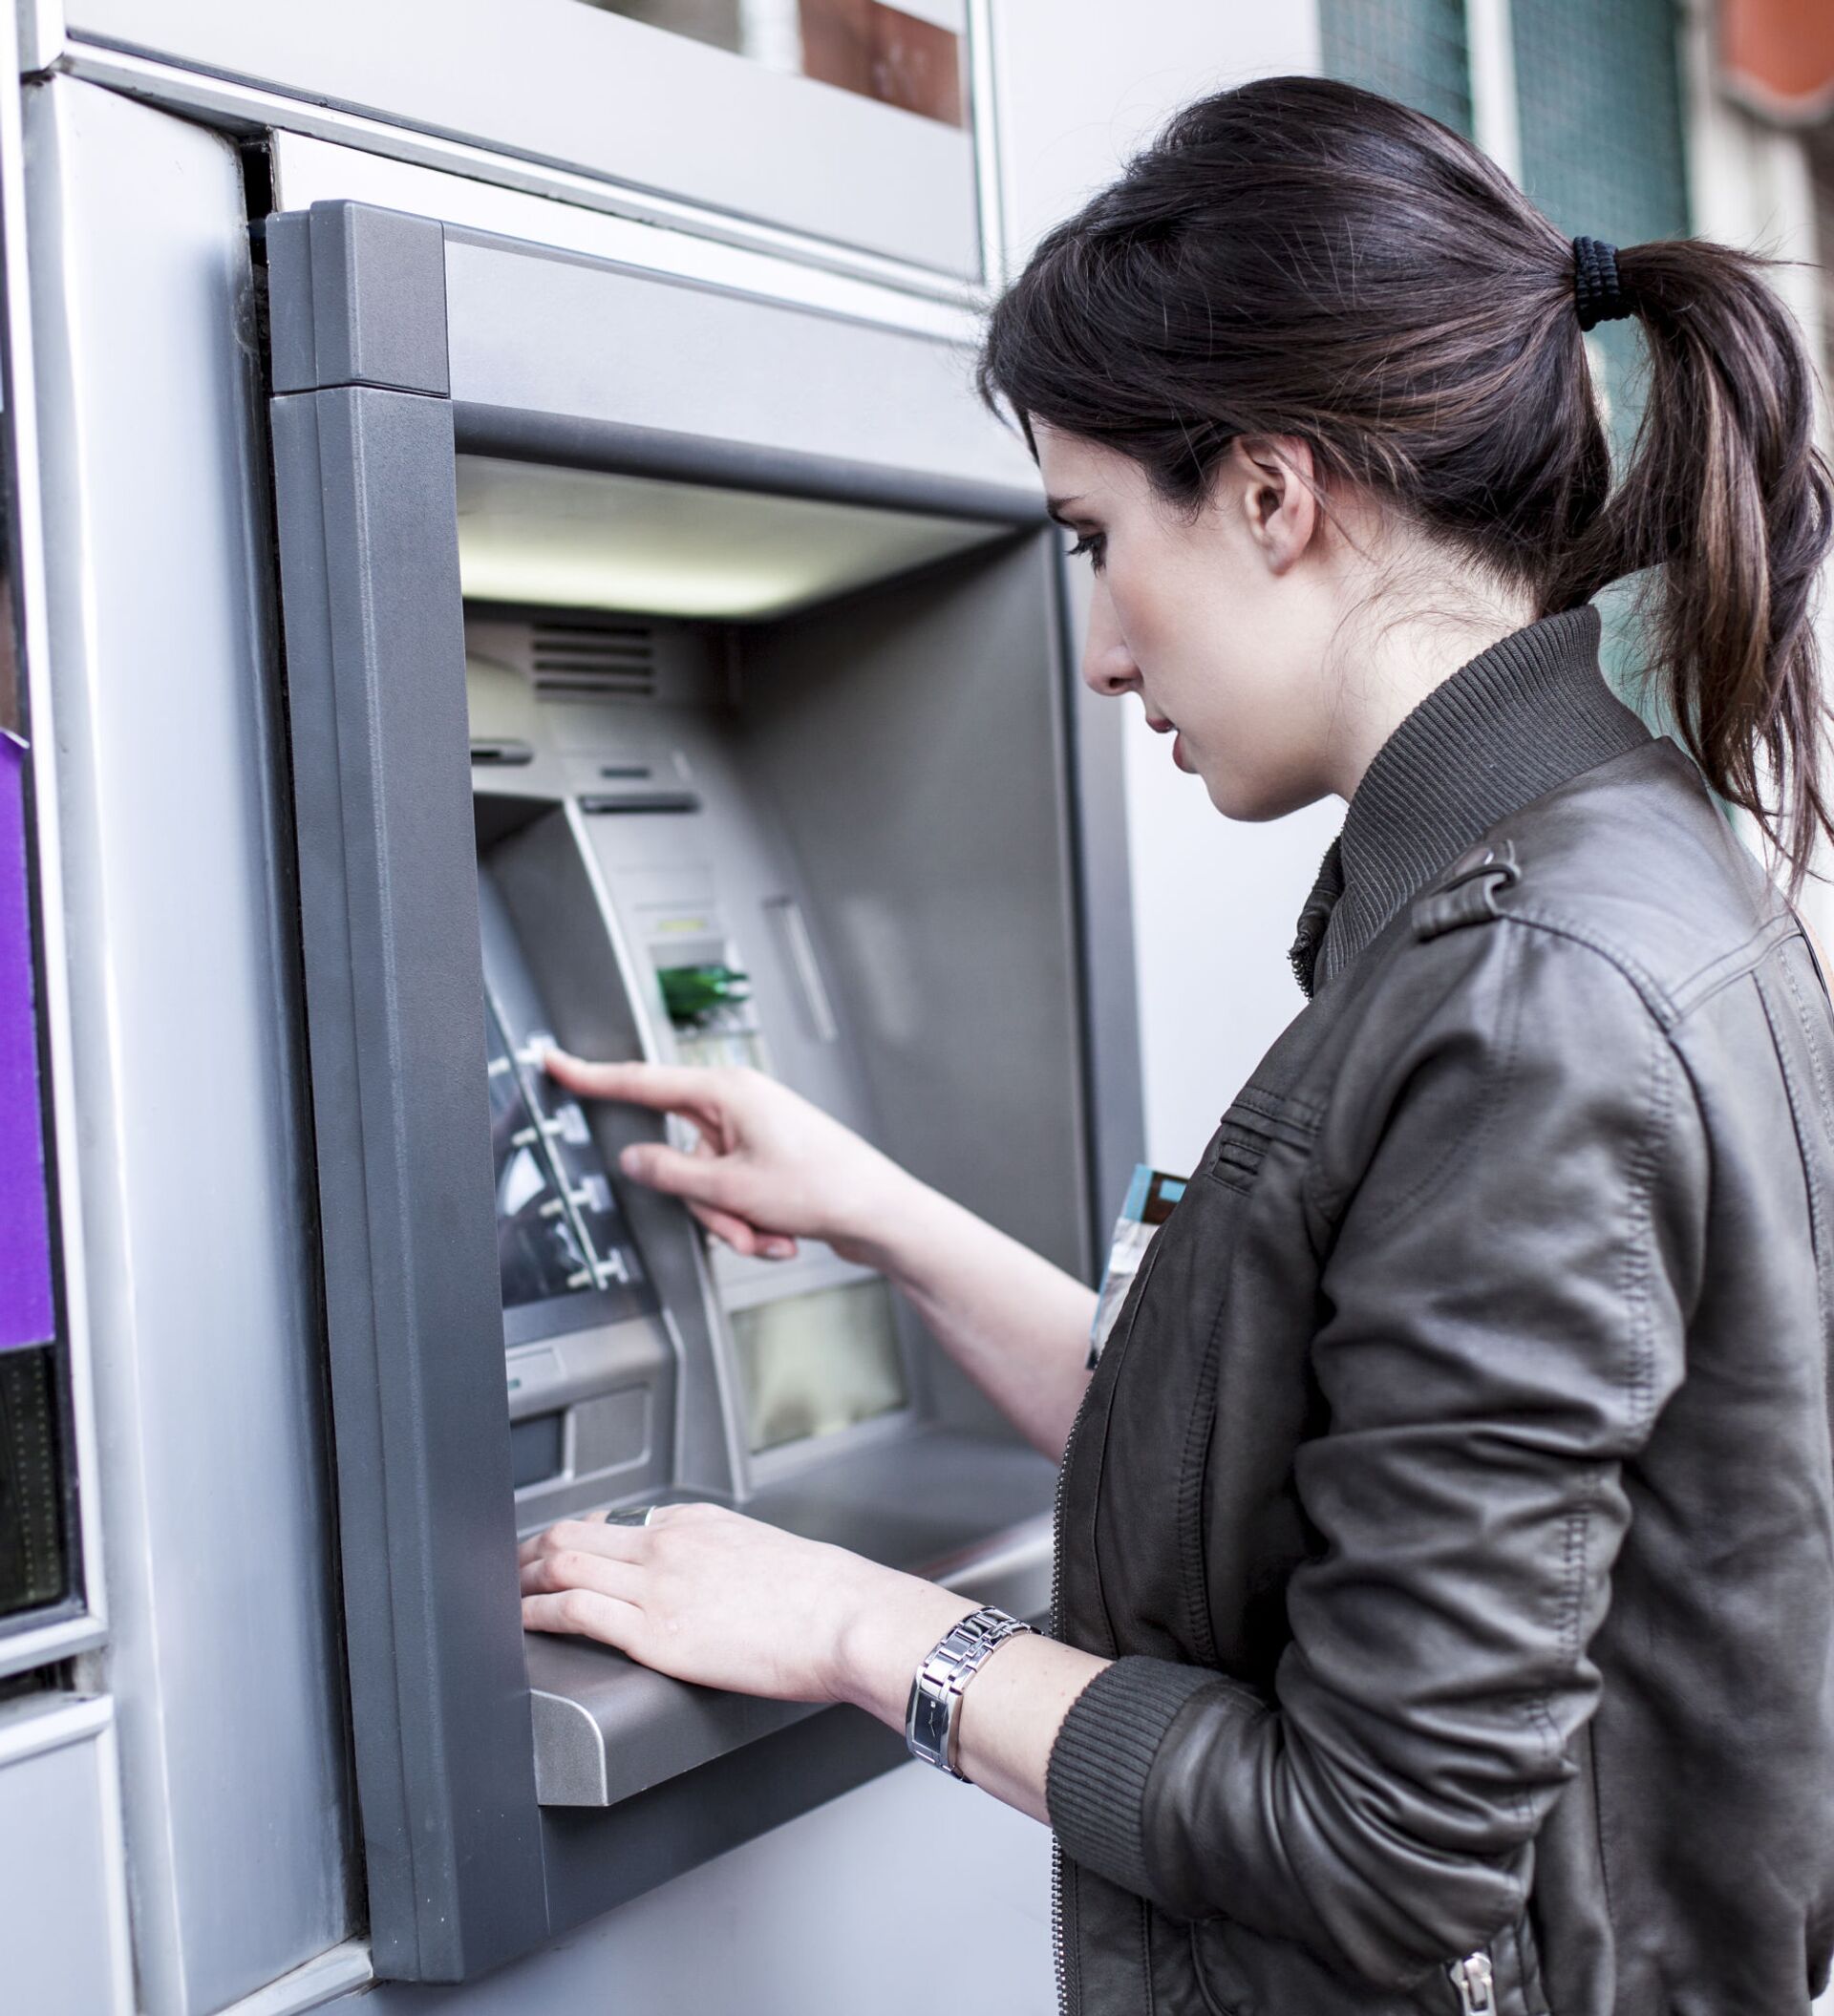 Снятие денег с телефона. Банкомат. Человек у банкомата. Женщина у банкомата. Банкомат (ATM).